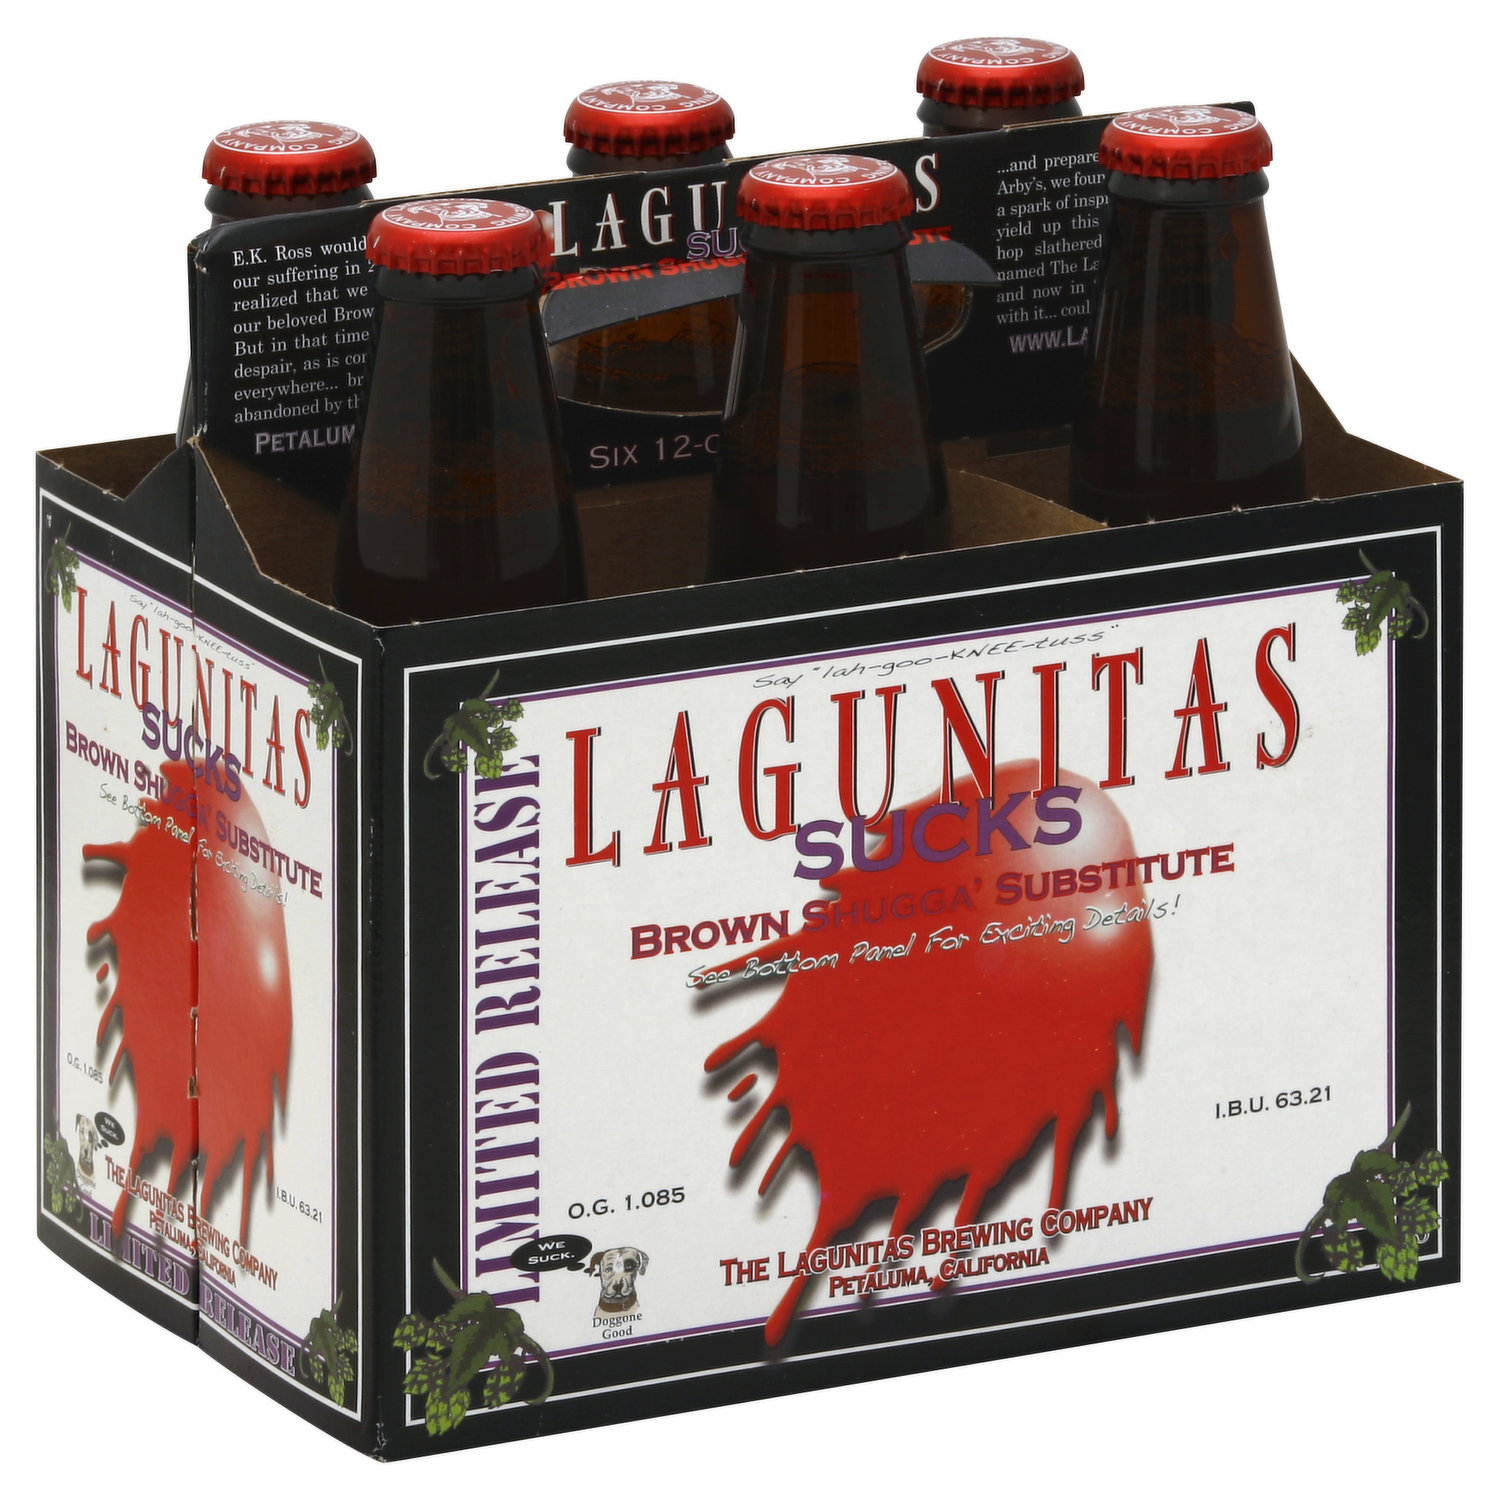 Lagunitas Ale, Sucks, Shugga\' Brown 6 Substitute, Limited Each Release